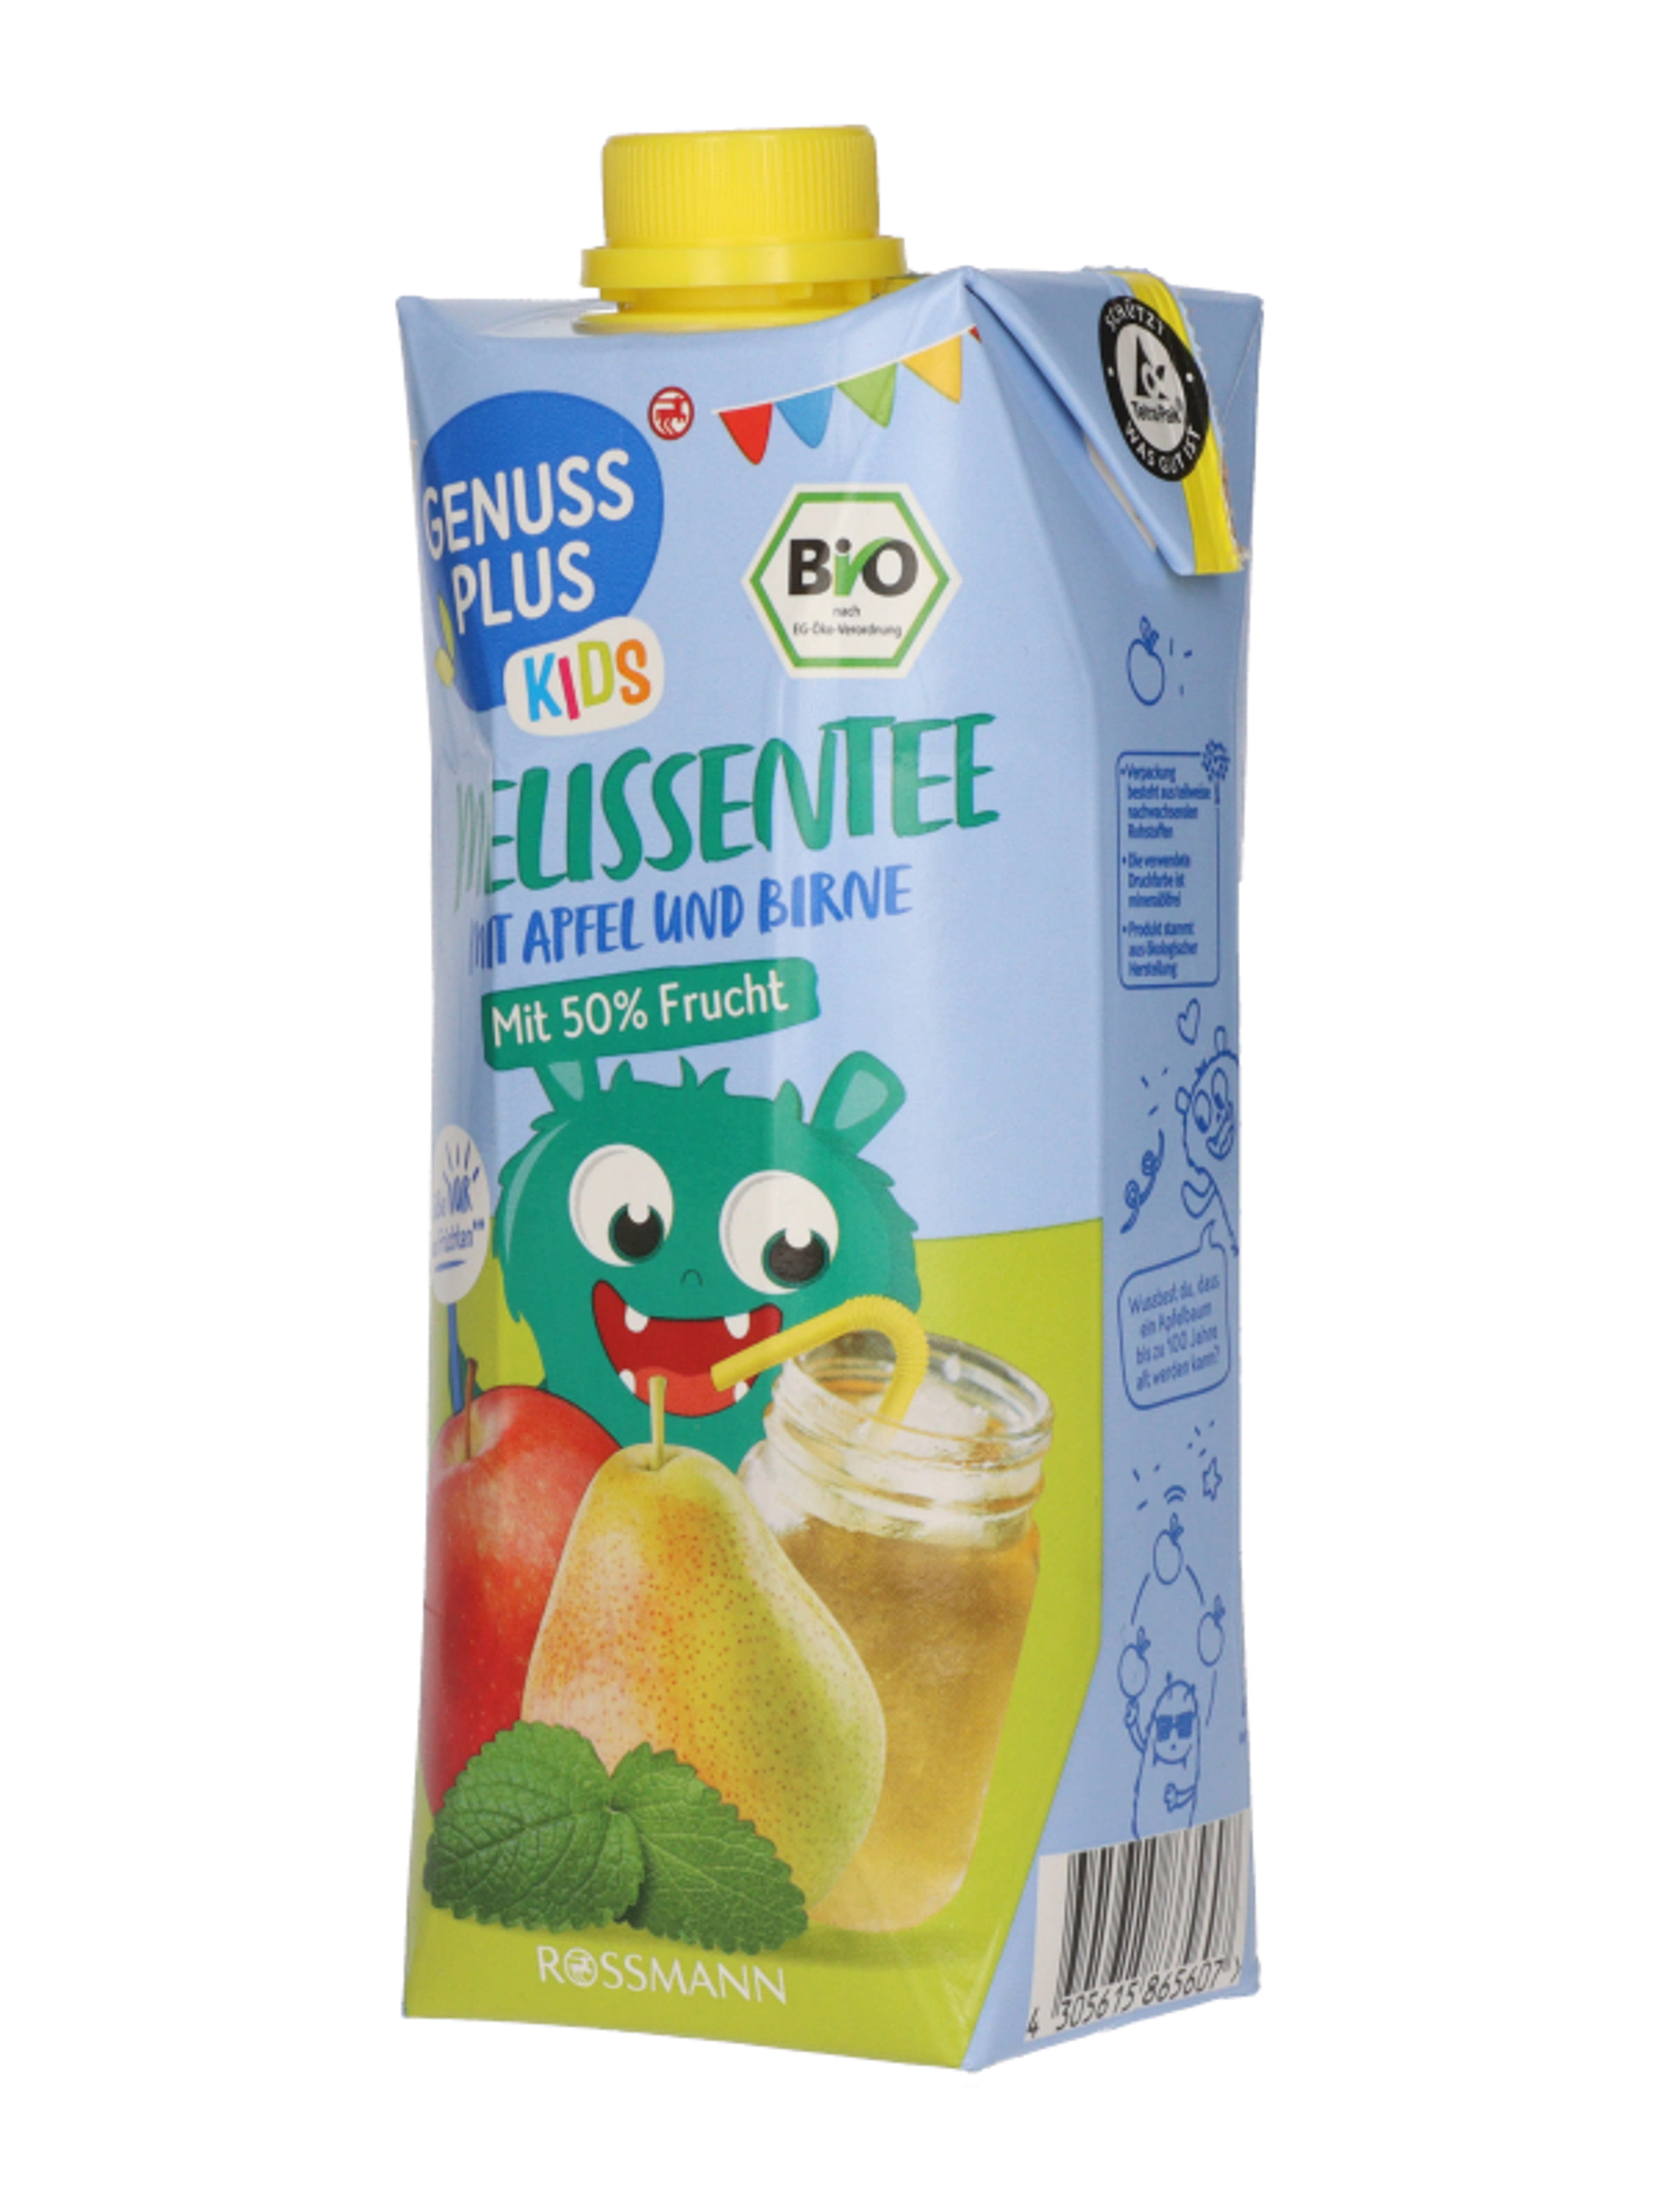 Genuss Plus Kids Melissen tea alma-körte 3 éves kortól -  500 ml-3